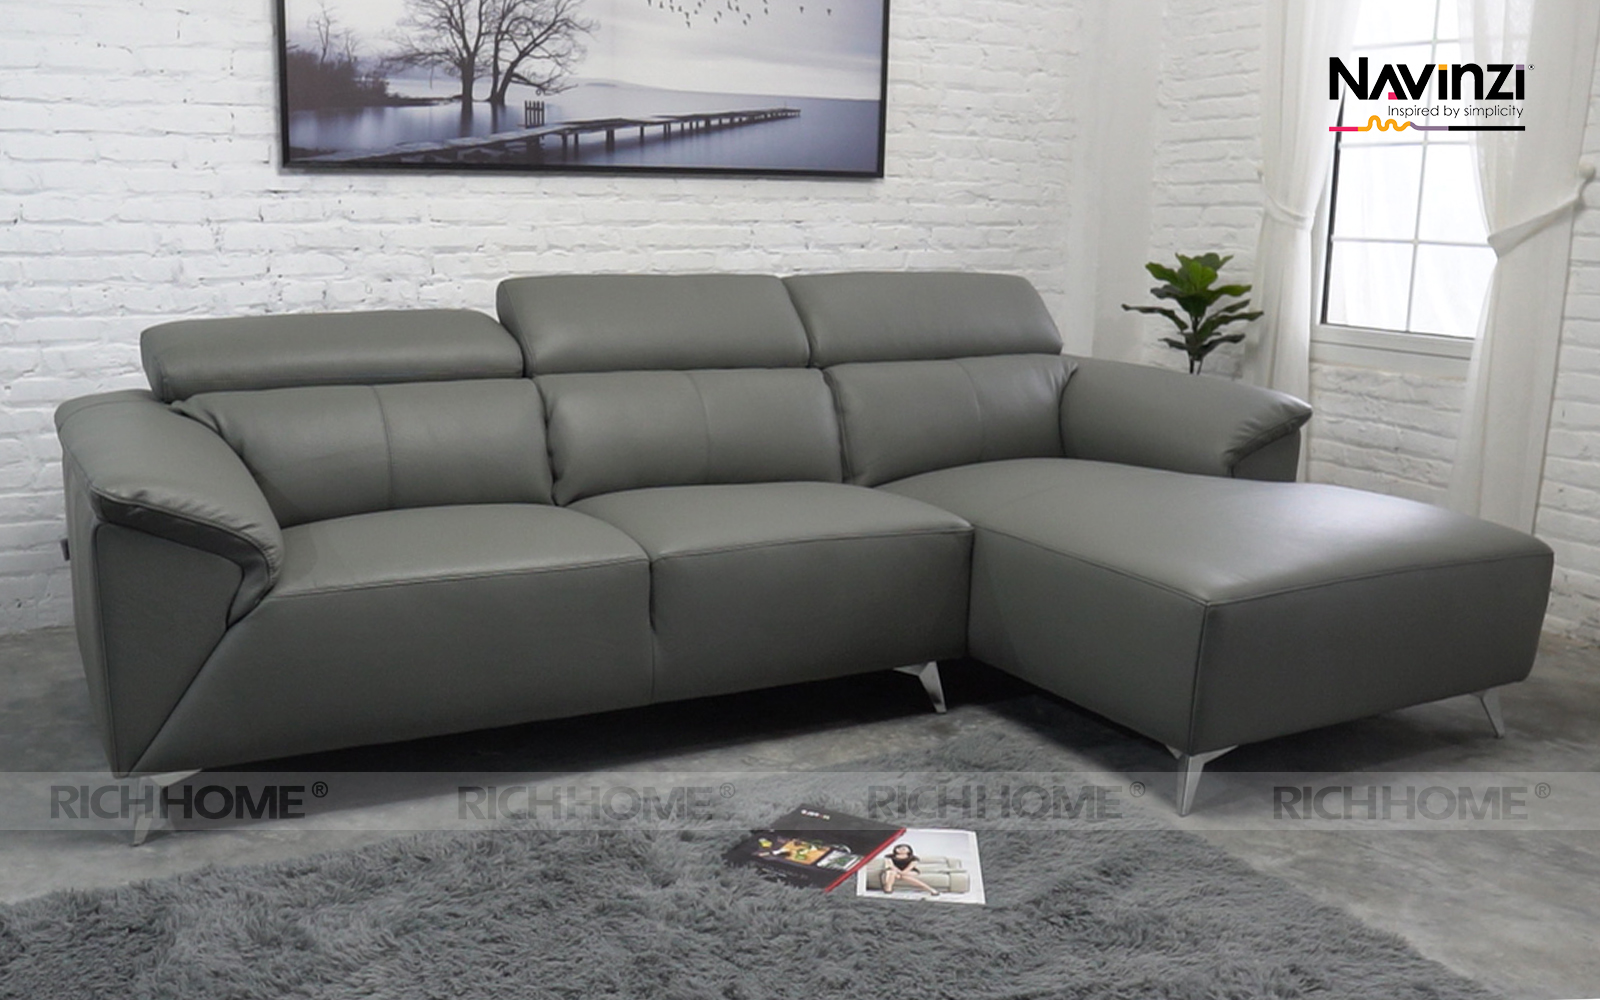 Top 10 mẫu ghế sofa màu xám lông chuột cho phòng khách hiện đại - Ảnh 7